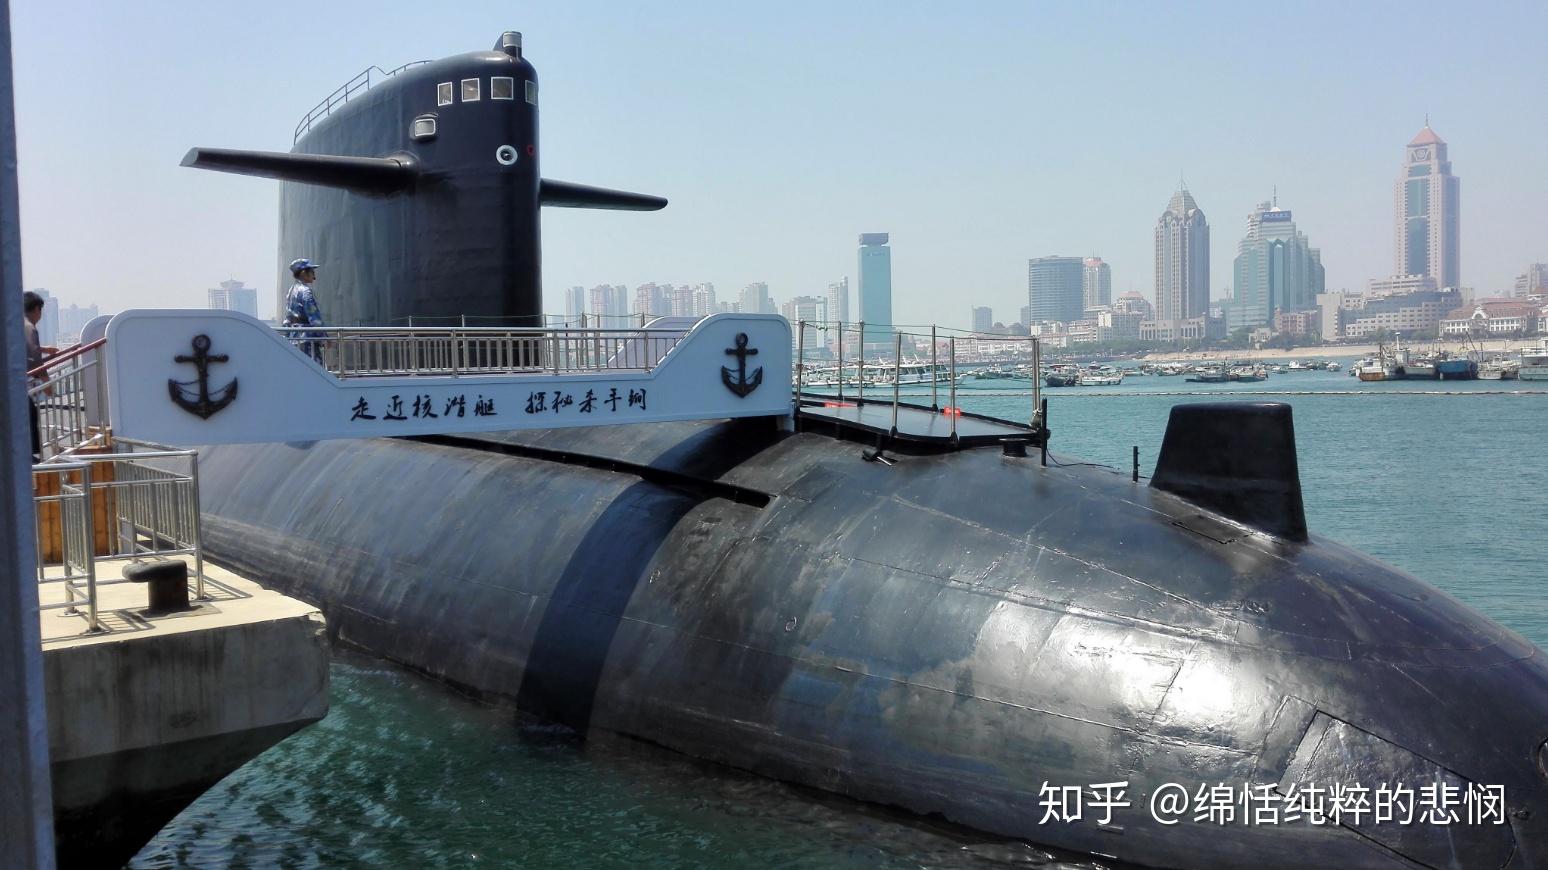 401号核潜艇图片